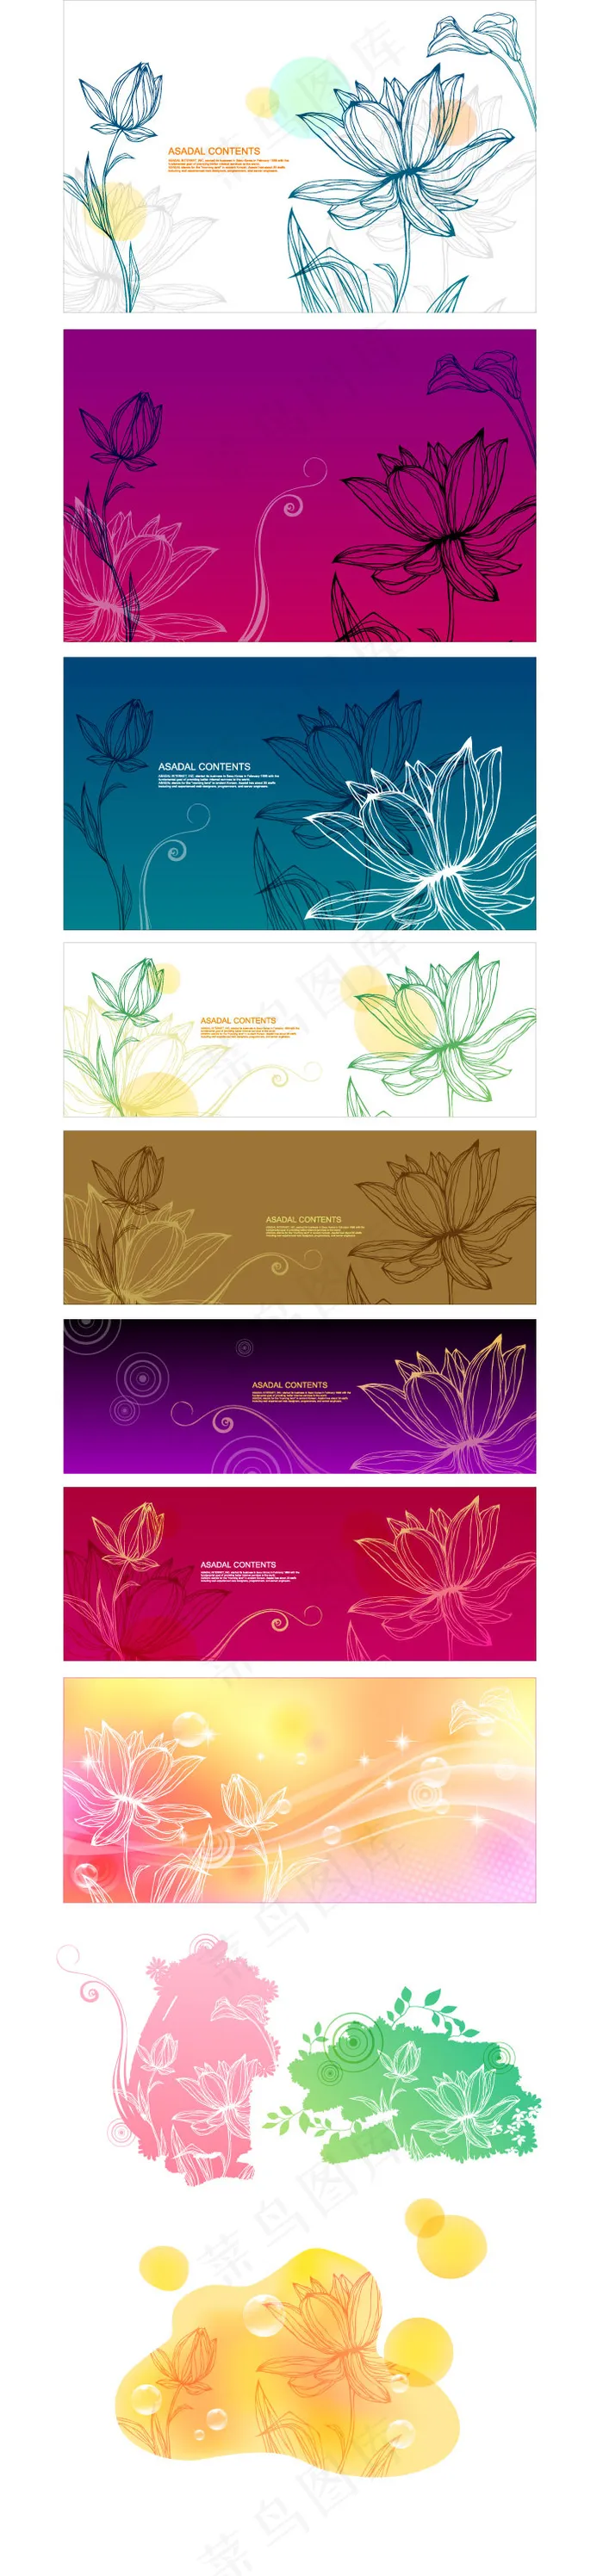 彩色线描花卉横幅矢量图 AI